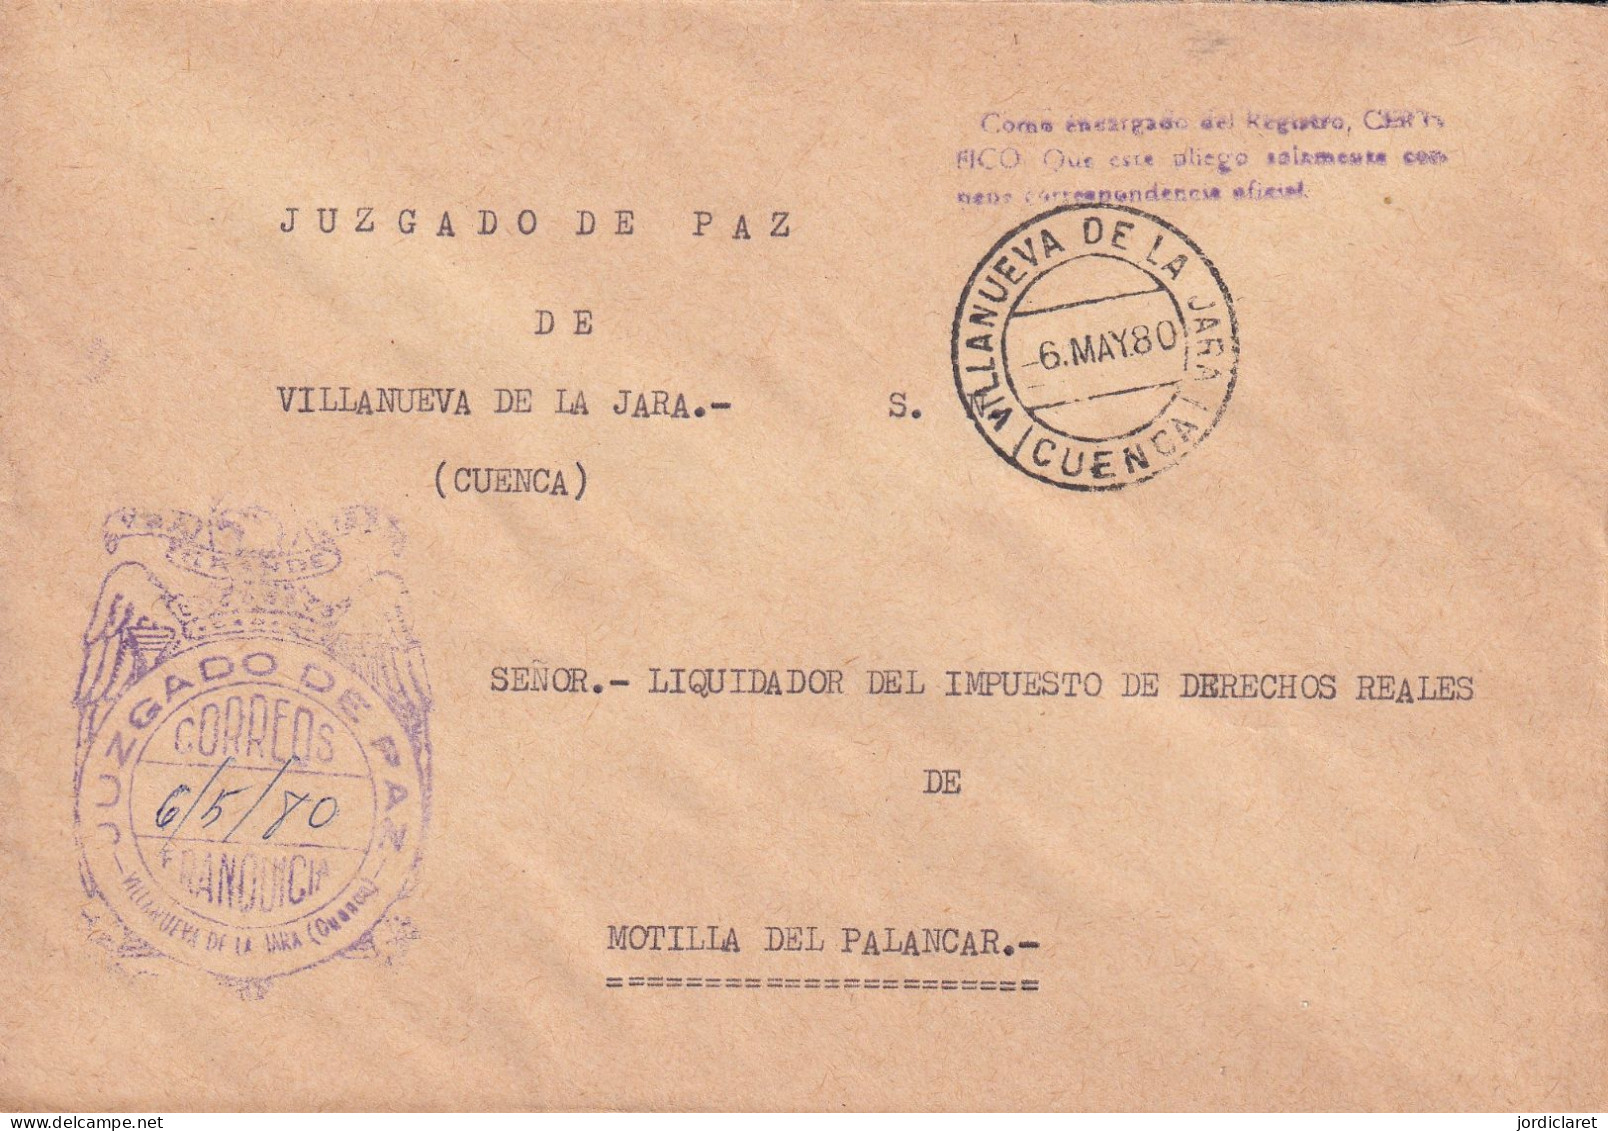 JUZGADO DE PAZ VILLANUEVA DE LA JARA CUENCA 1980 - Franchigia Postale